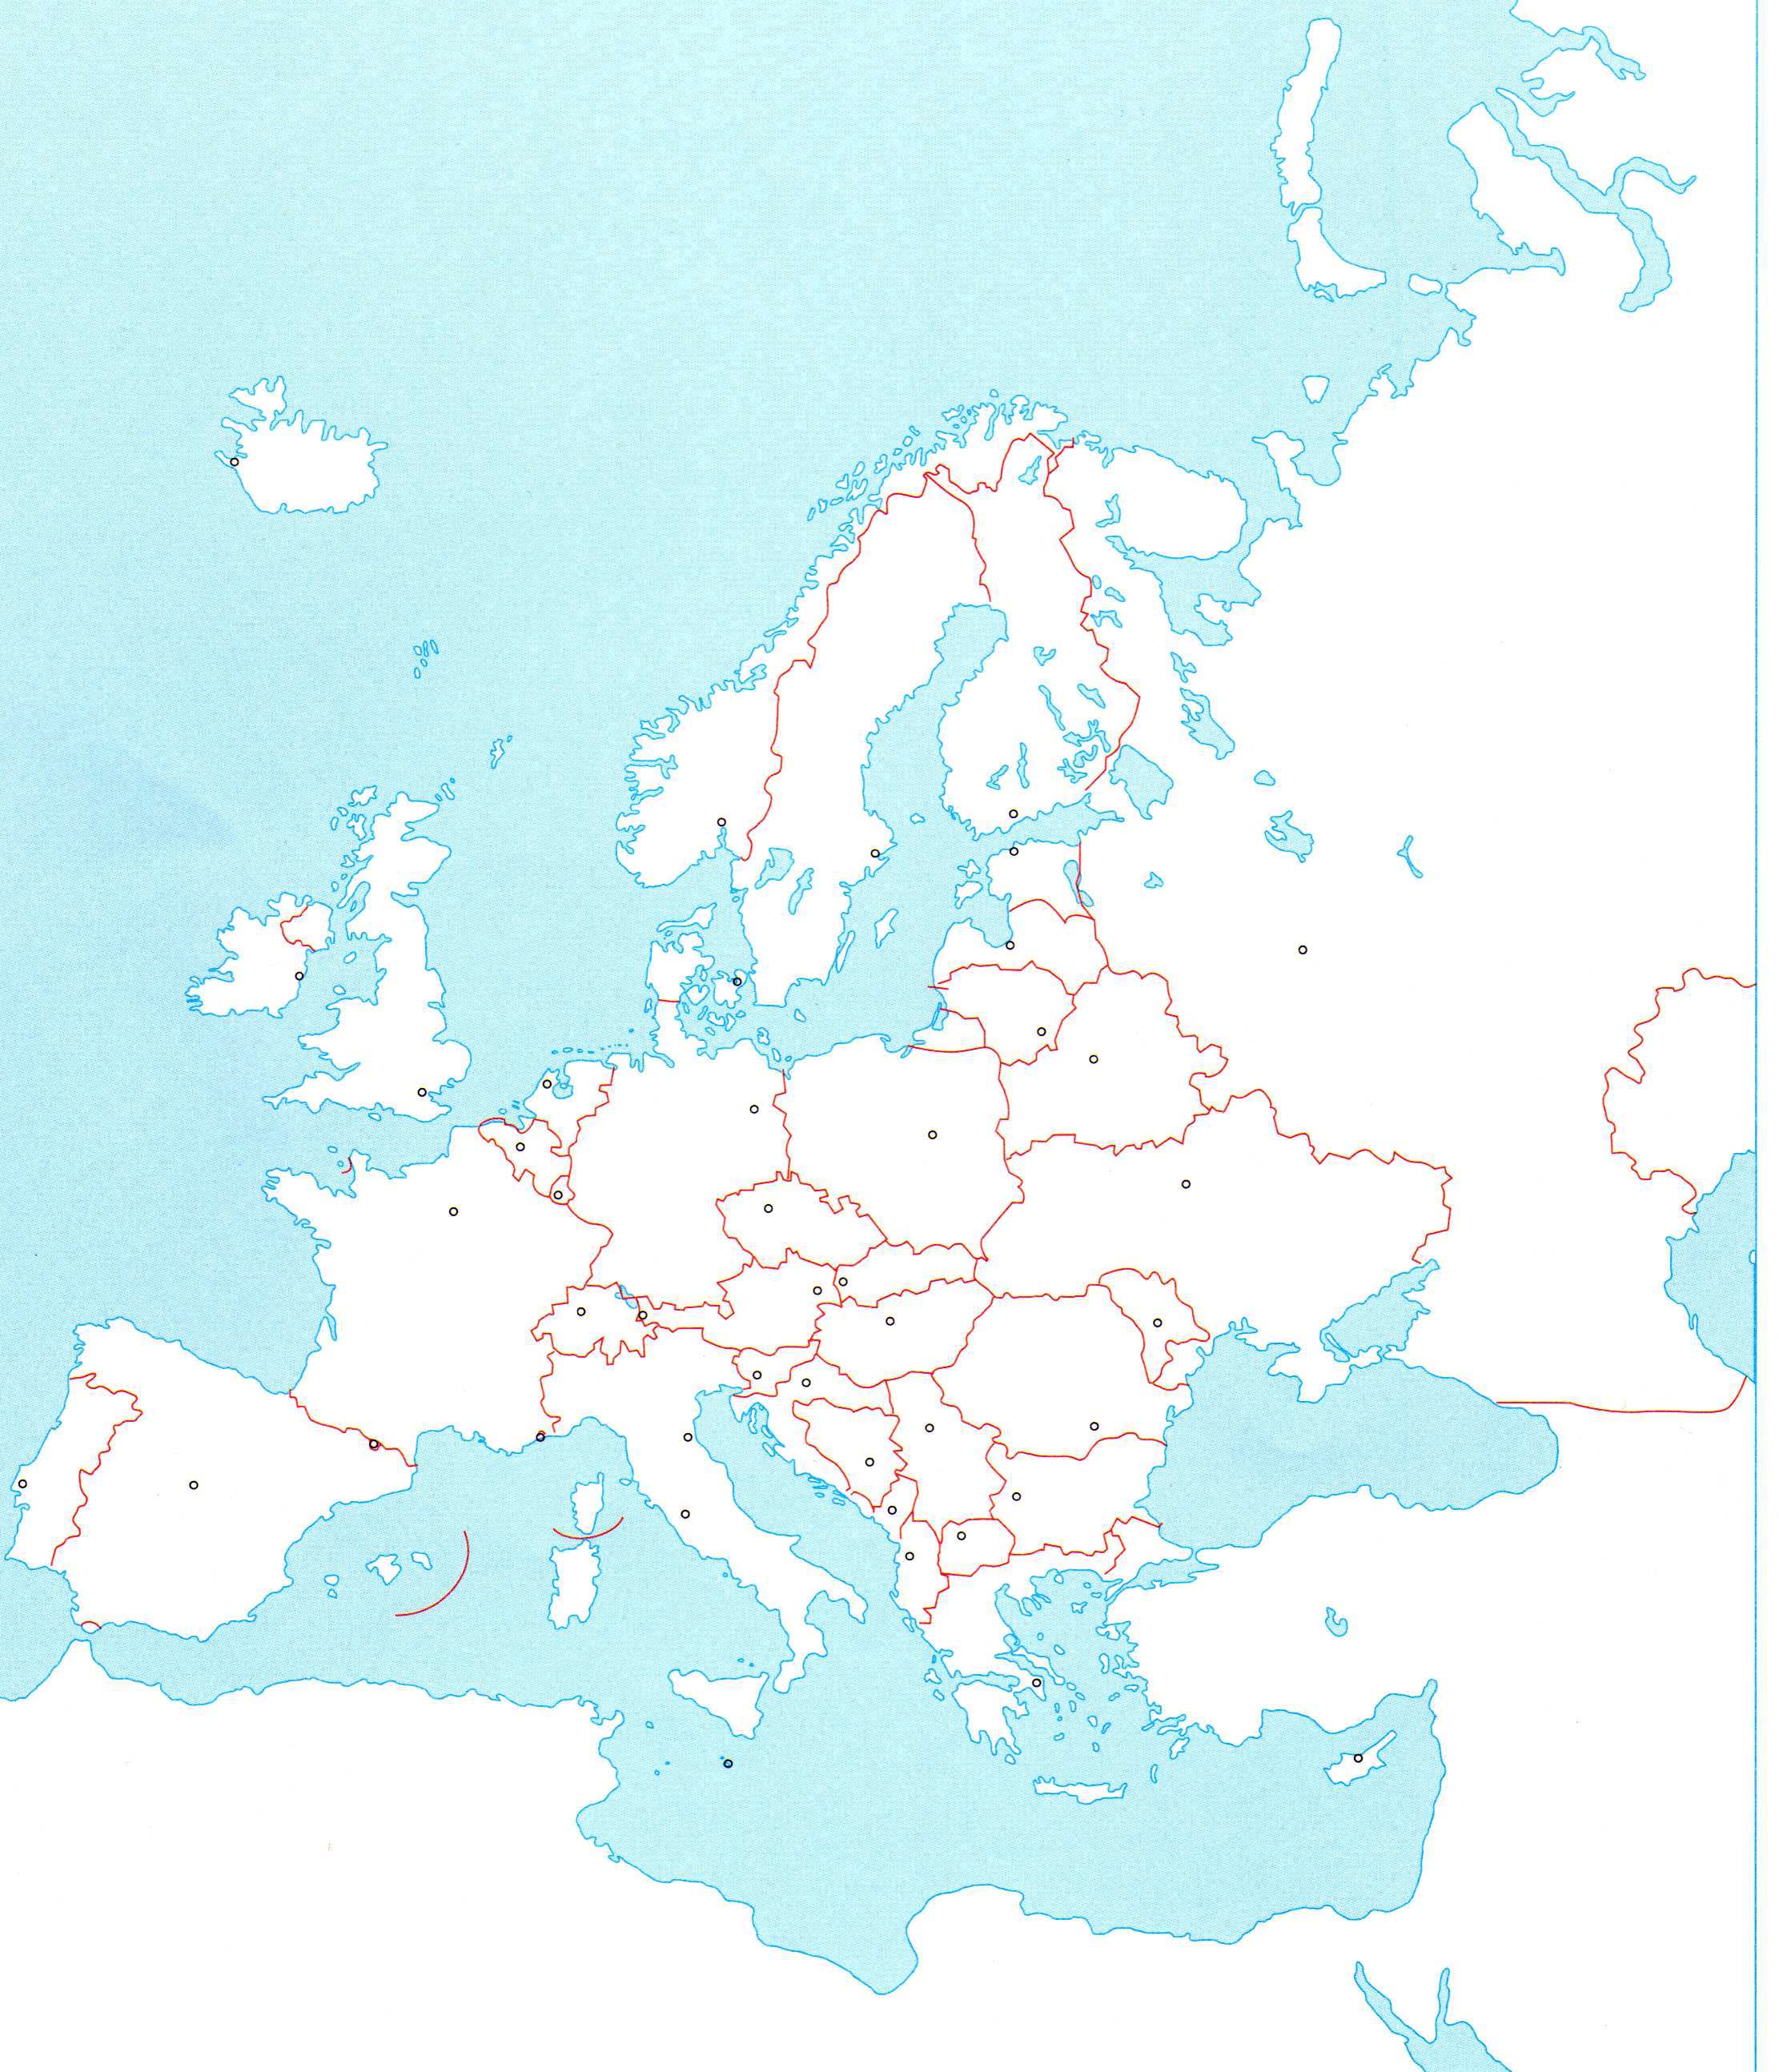 južna europa karta Osnovna škola Fažana   7.razred južna europa karta